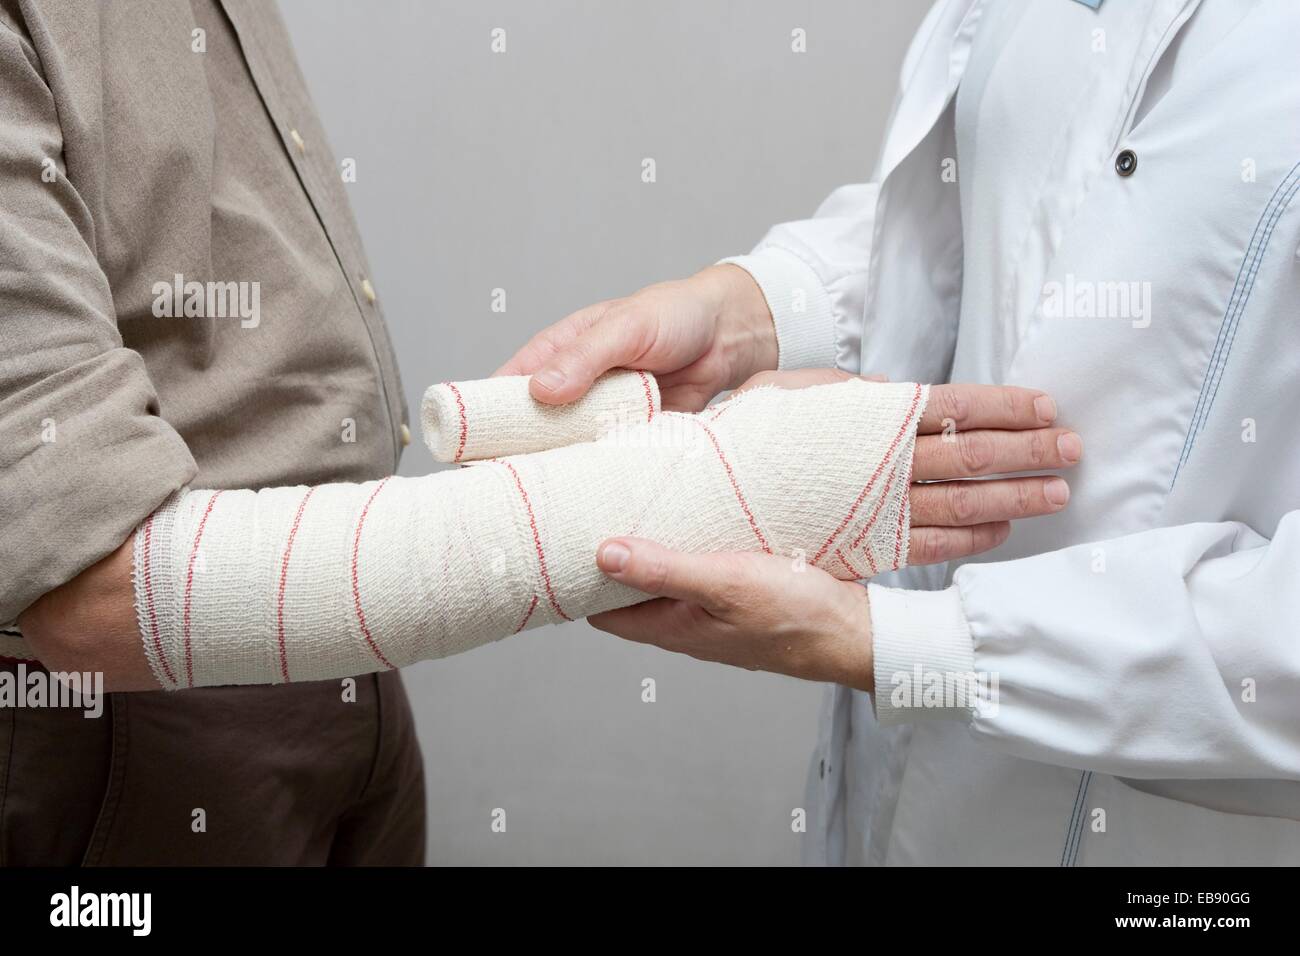 Arm bandage Stock Photo - Alamy